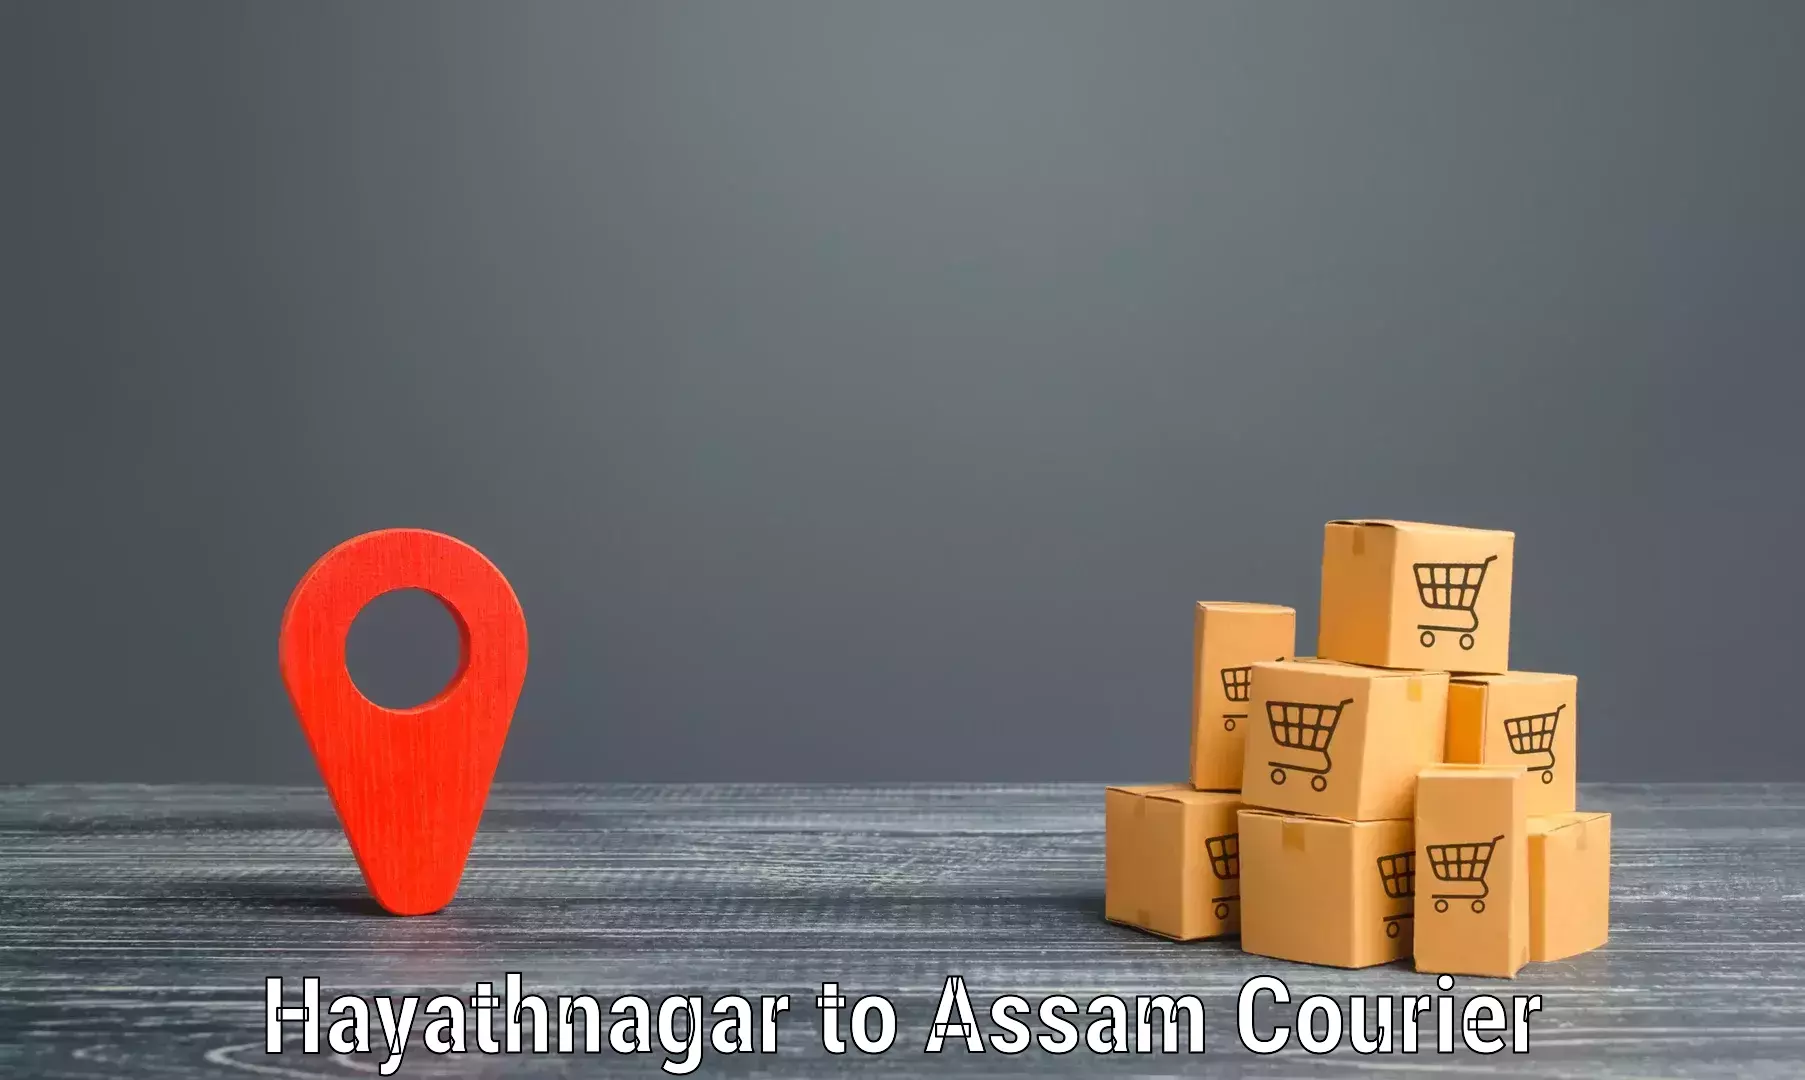 Easy return solutions Hayathnagar to Agomani